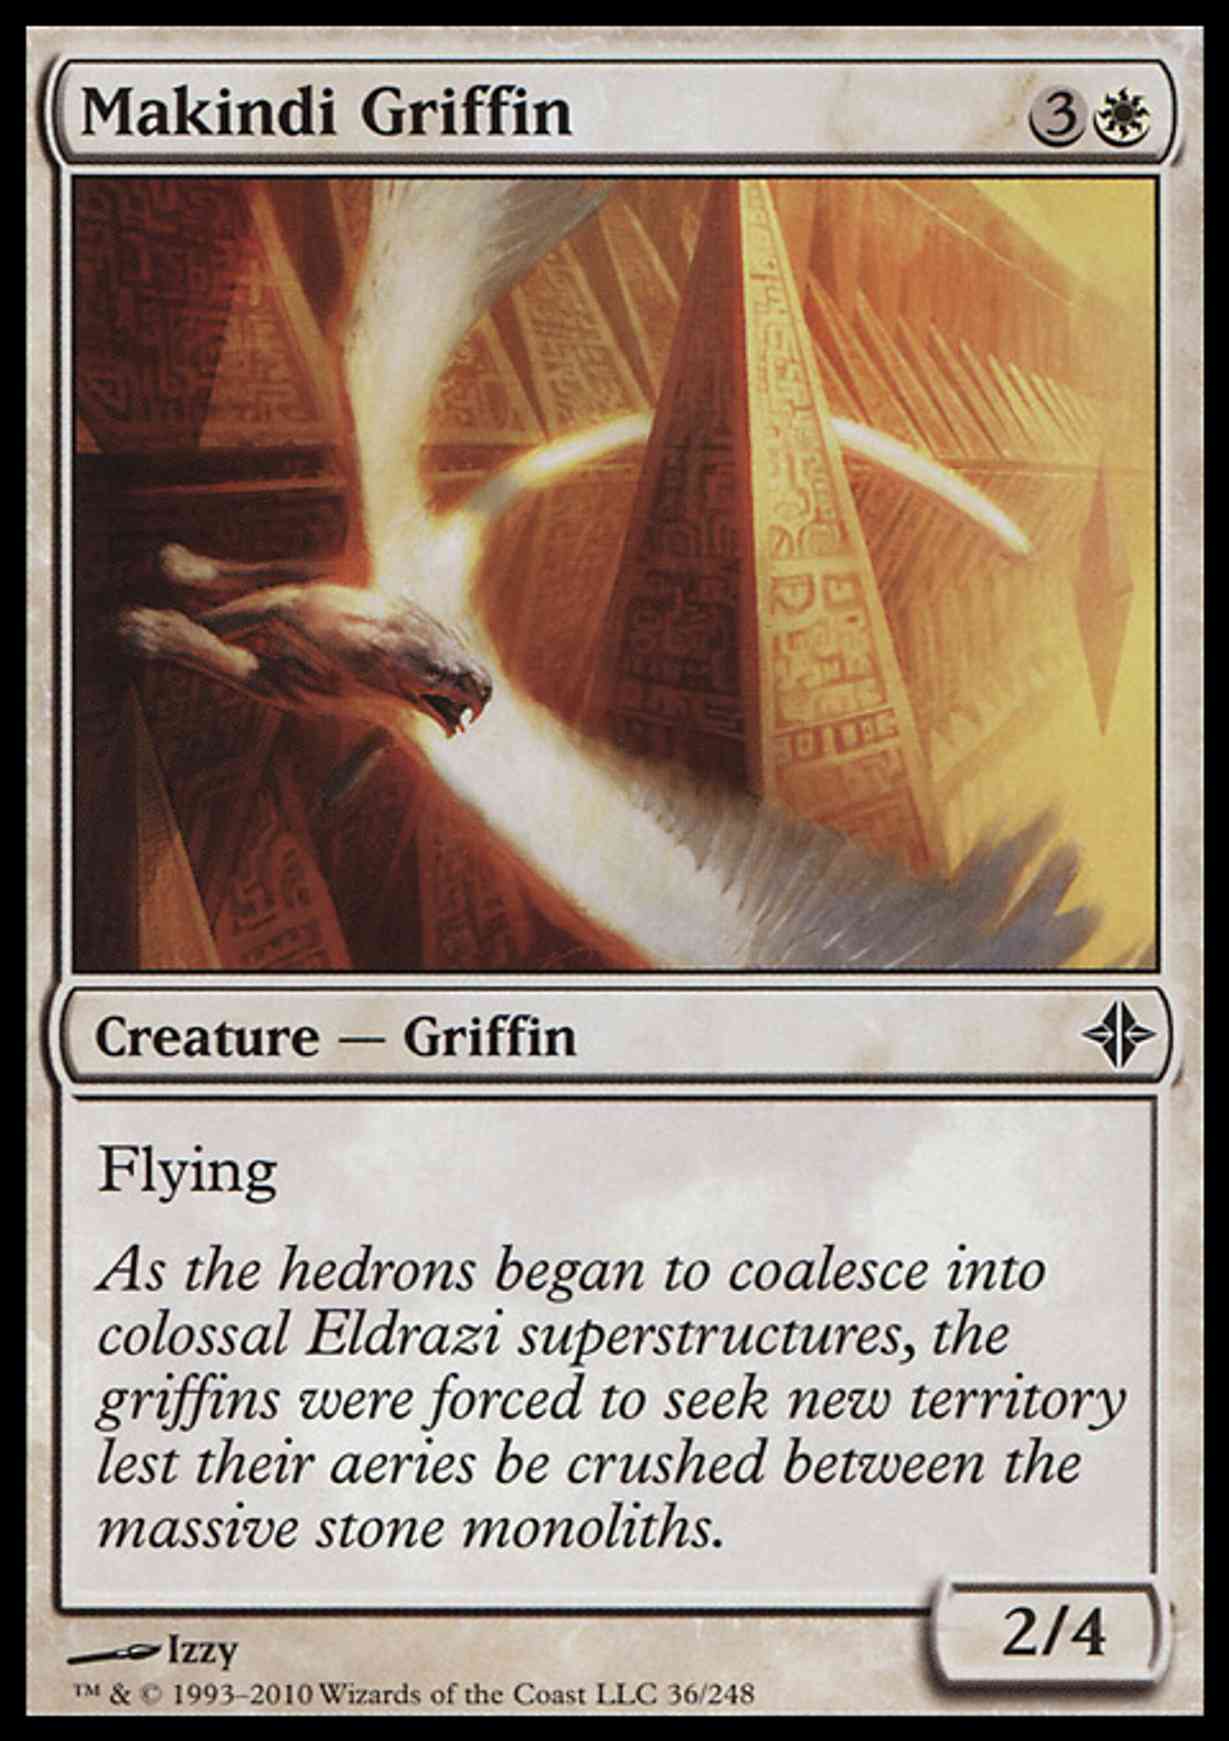 Makindi Griffin magic card front